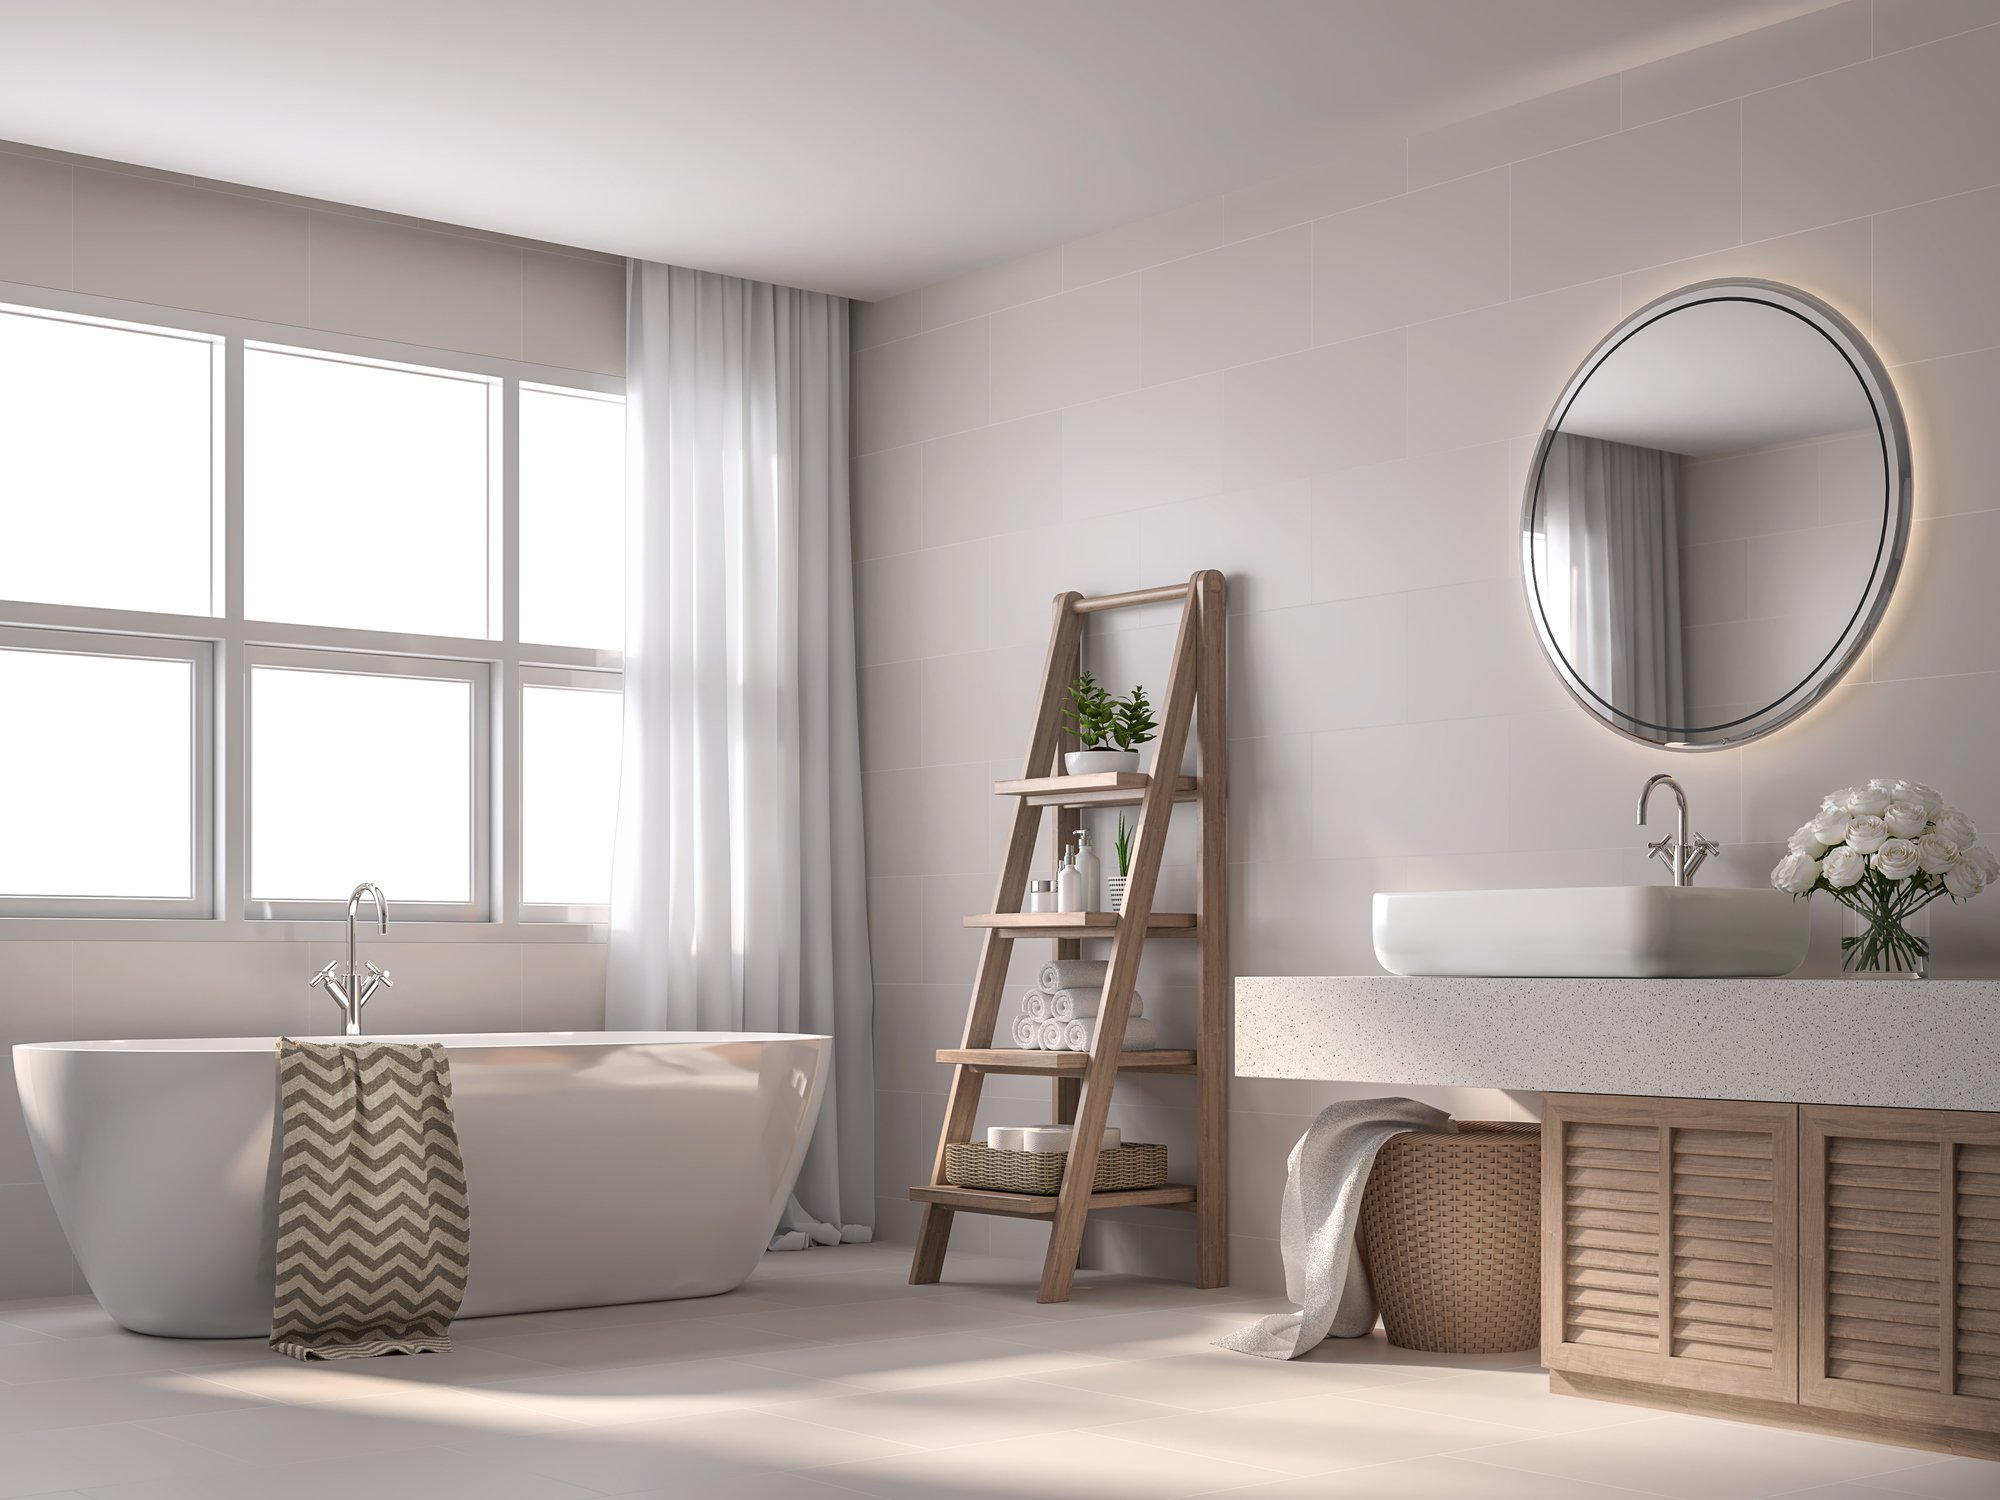 Τα 3 trends που πρέπει να ακολουθήσεις στην διακόσμηση του μπάνιου για να φαίνεται λειτουργικό, μοντέρνο αλλά καθαρό